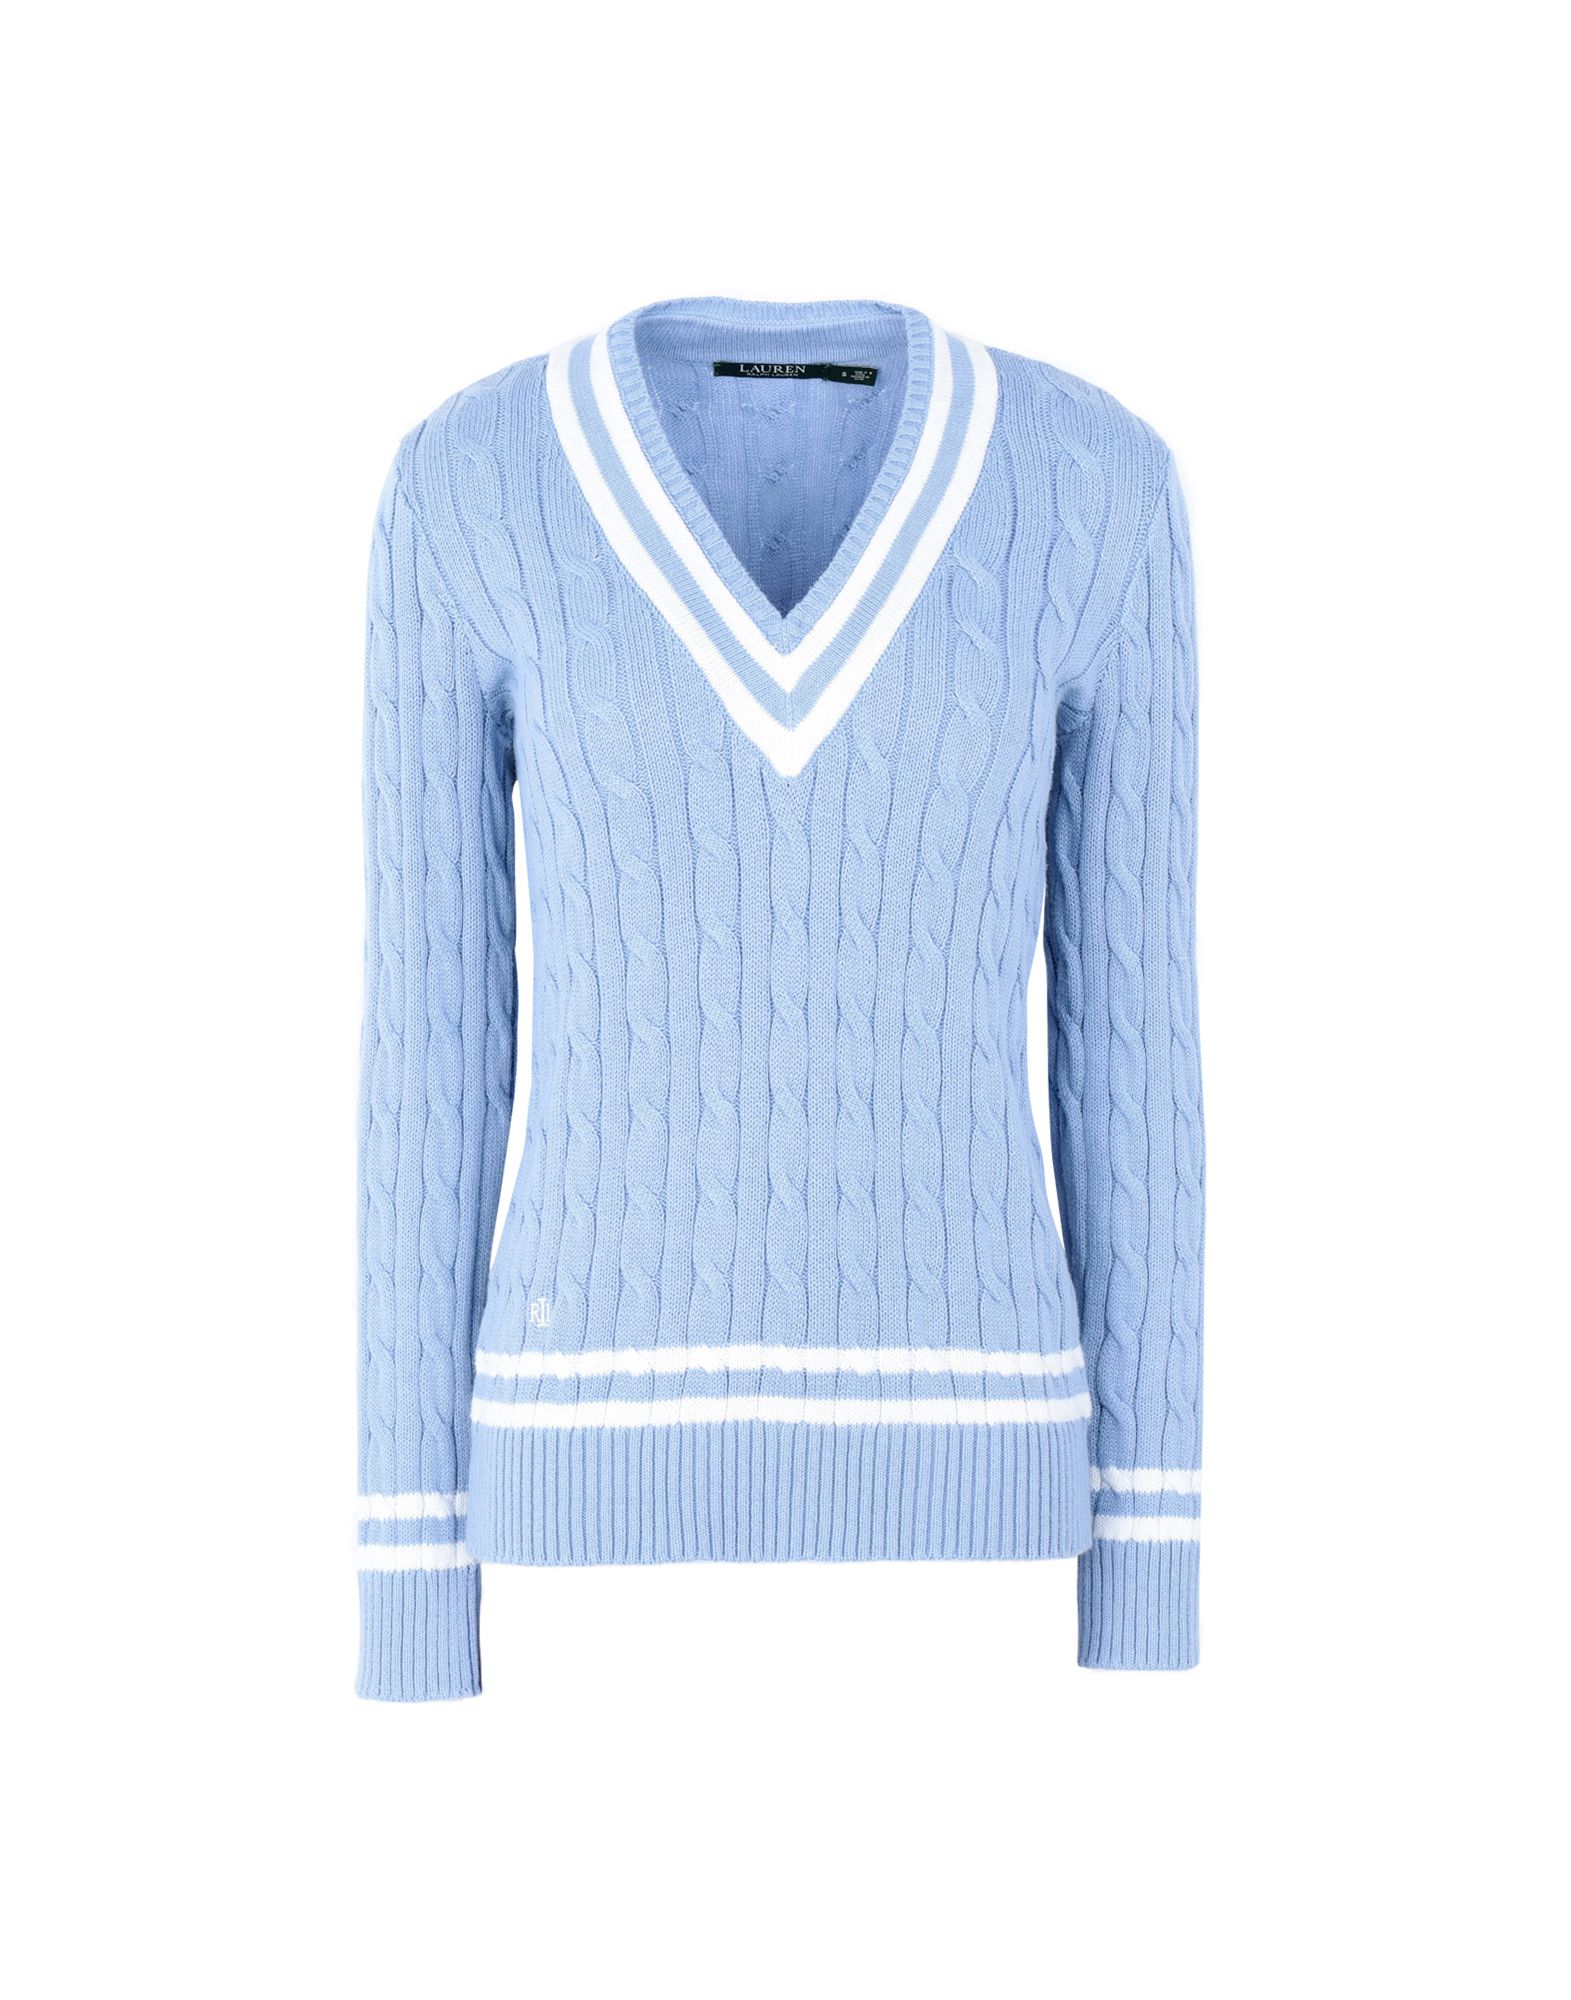 《送料無料》LAUREN RALPH LAUREN レディース プルオーバー スカイブルー XS コットン 100% Cotton Cricket Sweater